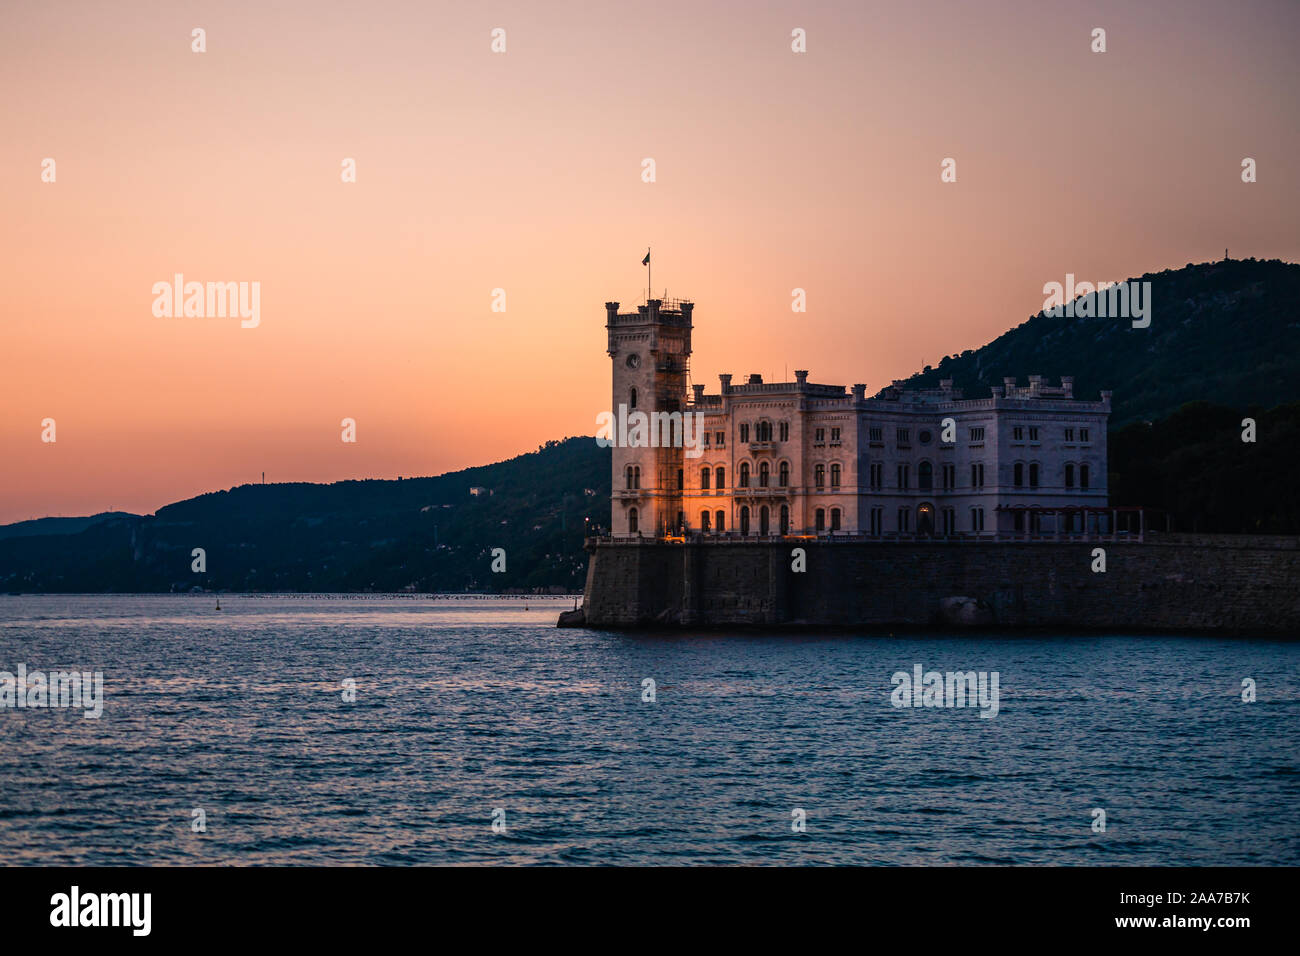 Dramatic view of the tourist spot Castello di Miamare (Castle of Miramare) in Trieste, Italy on the Mediterranean sea coast in europe while sunset. Vi Stock Photo